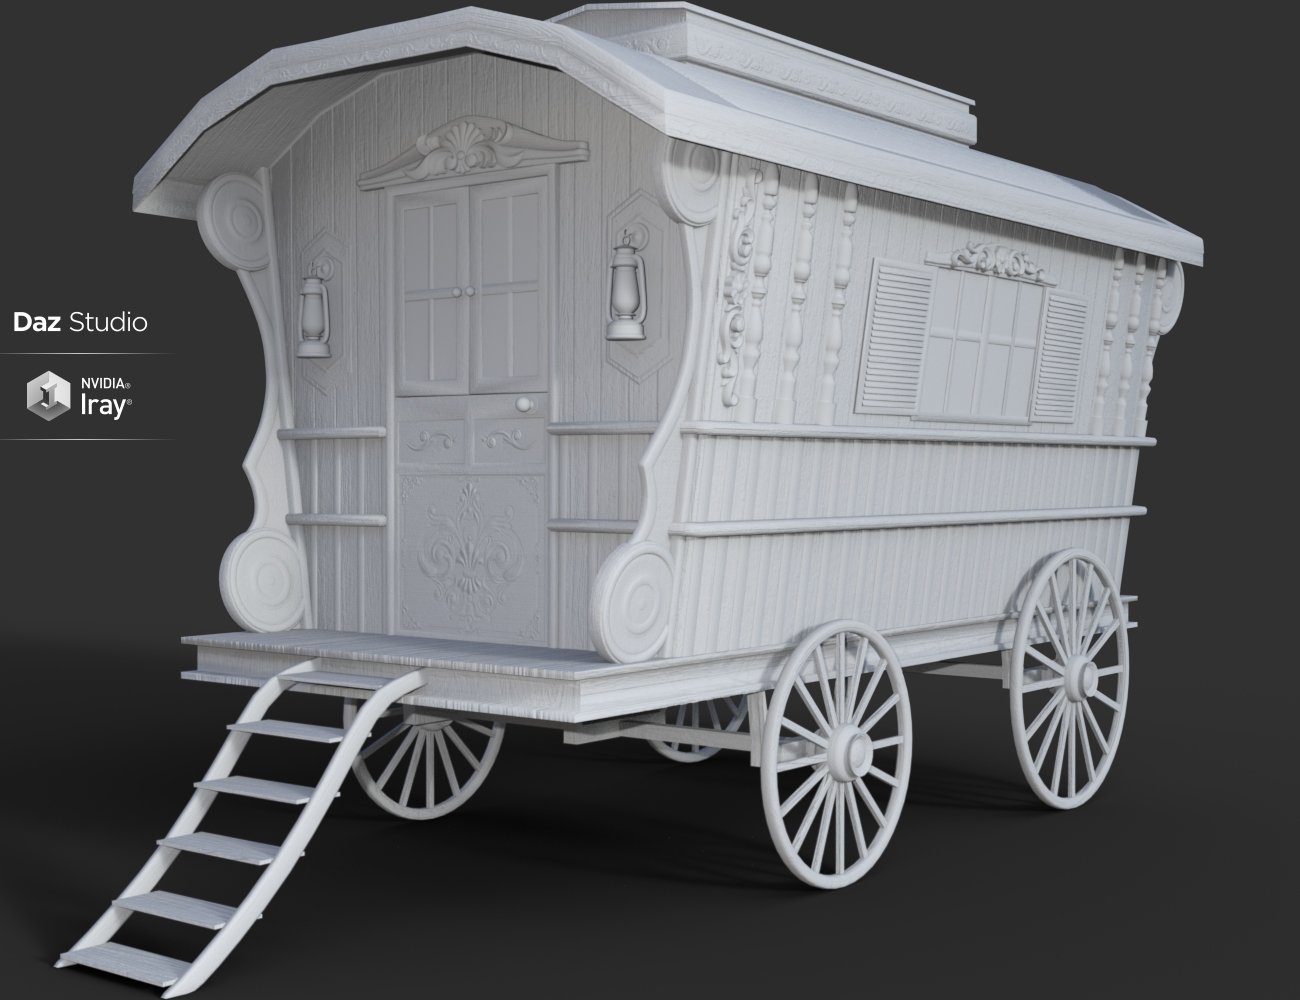 Ornate Wagon by: Nikisatez, 3D Models by Daz 3D